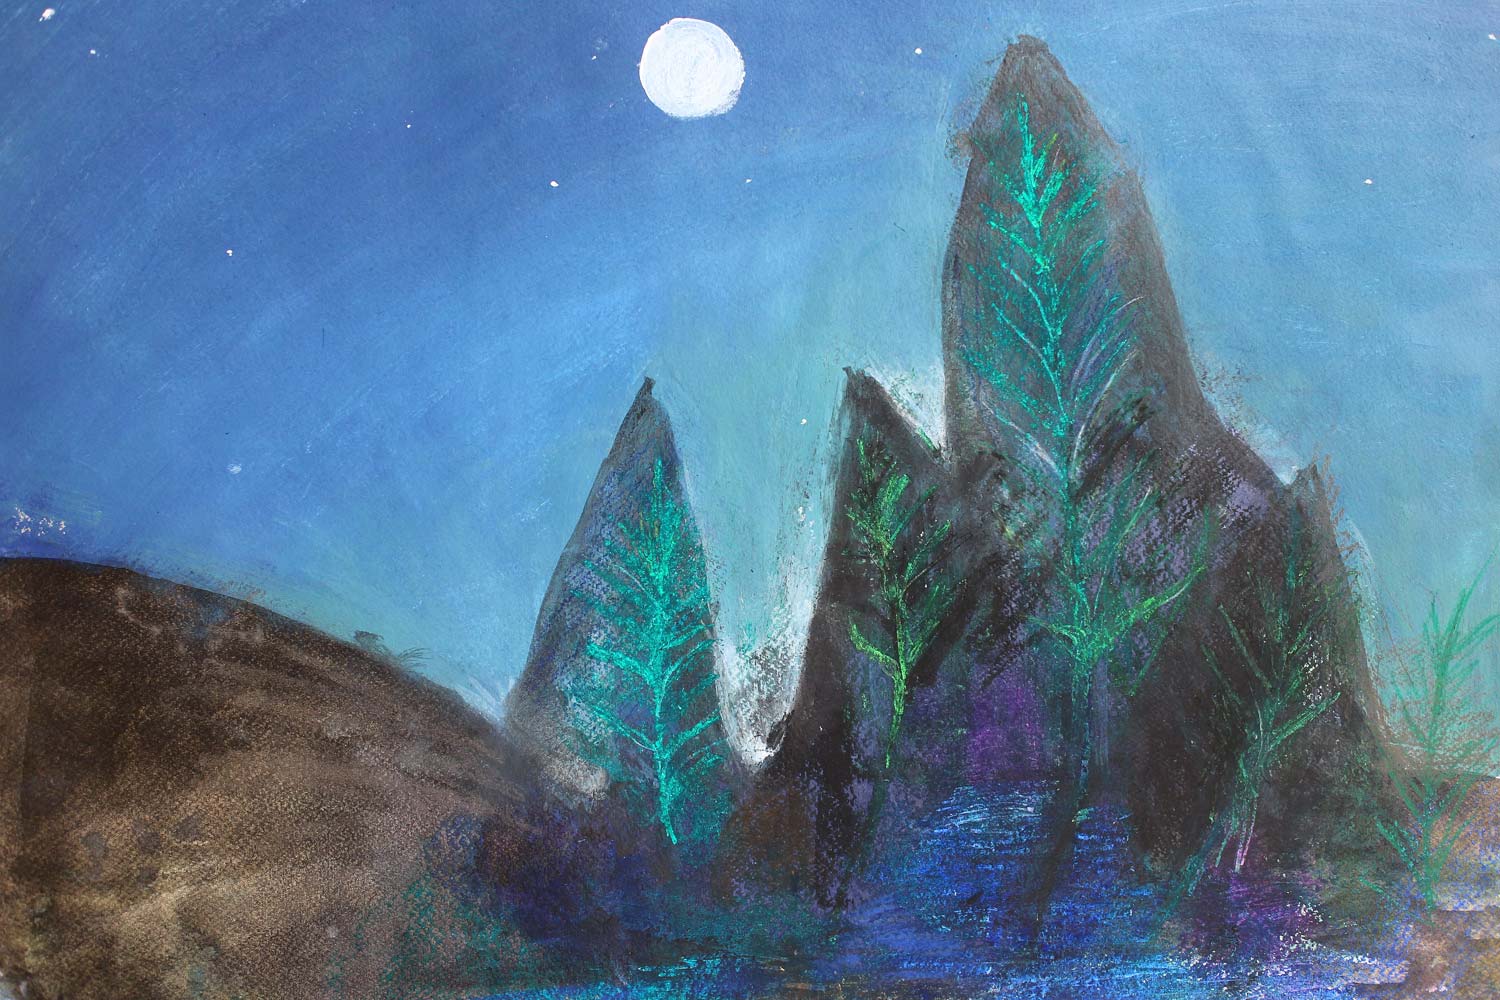 Student artwork of a moonlit landscape